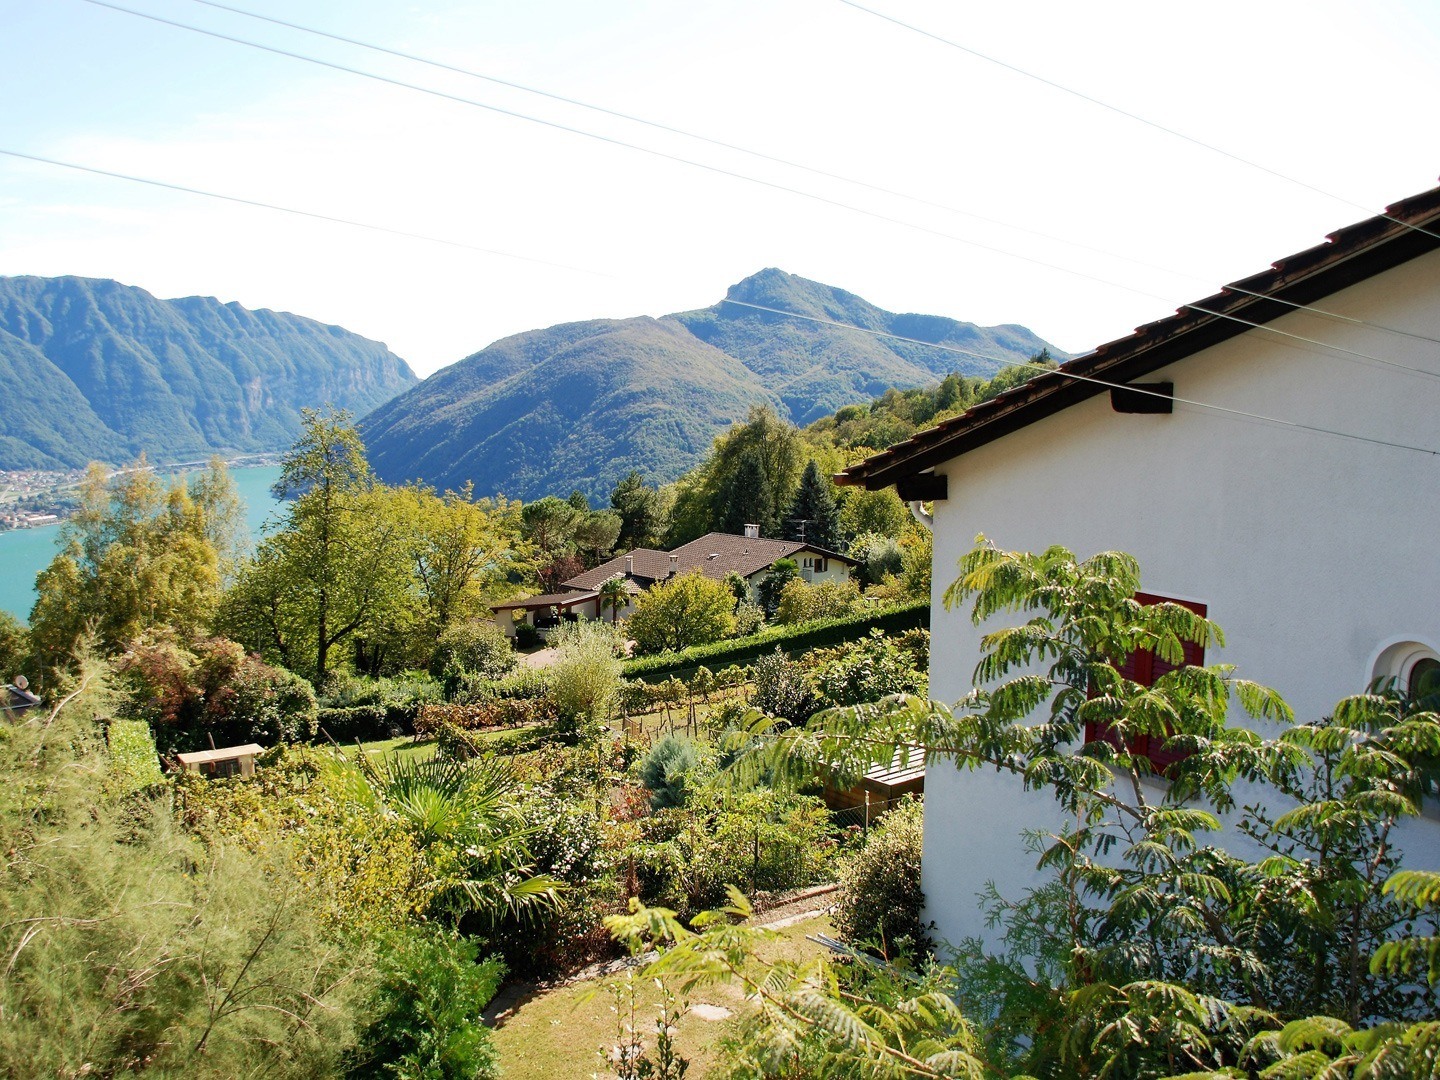 Tessin.ch: Gemütliche 4-Zimmer Ferienwohnung mit Balkon und grossem Umschwung im idyllischen Dorf Carona